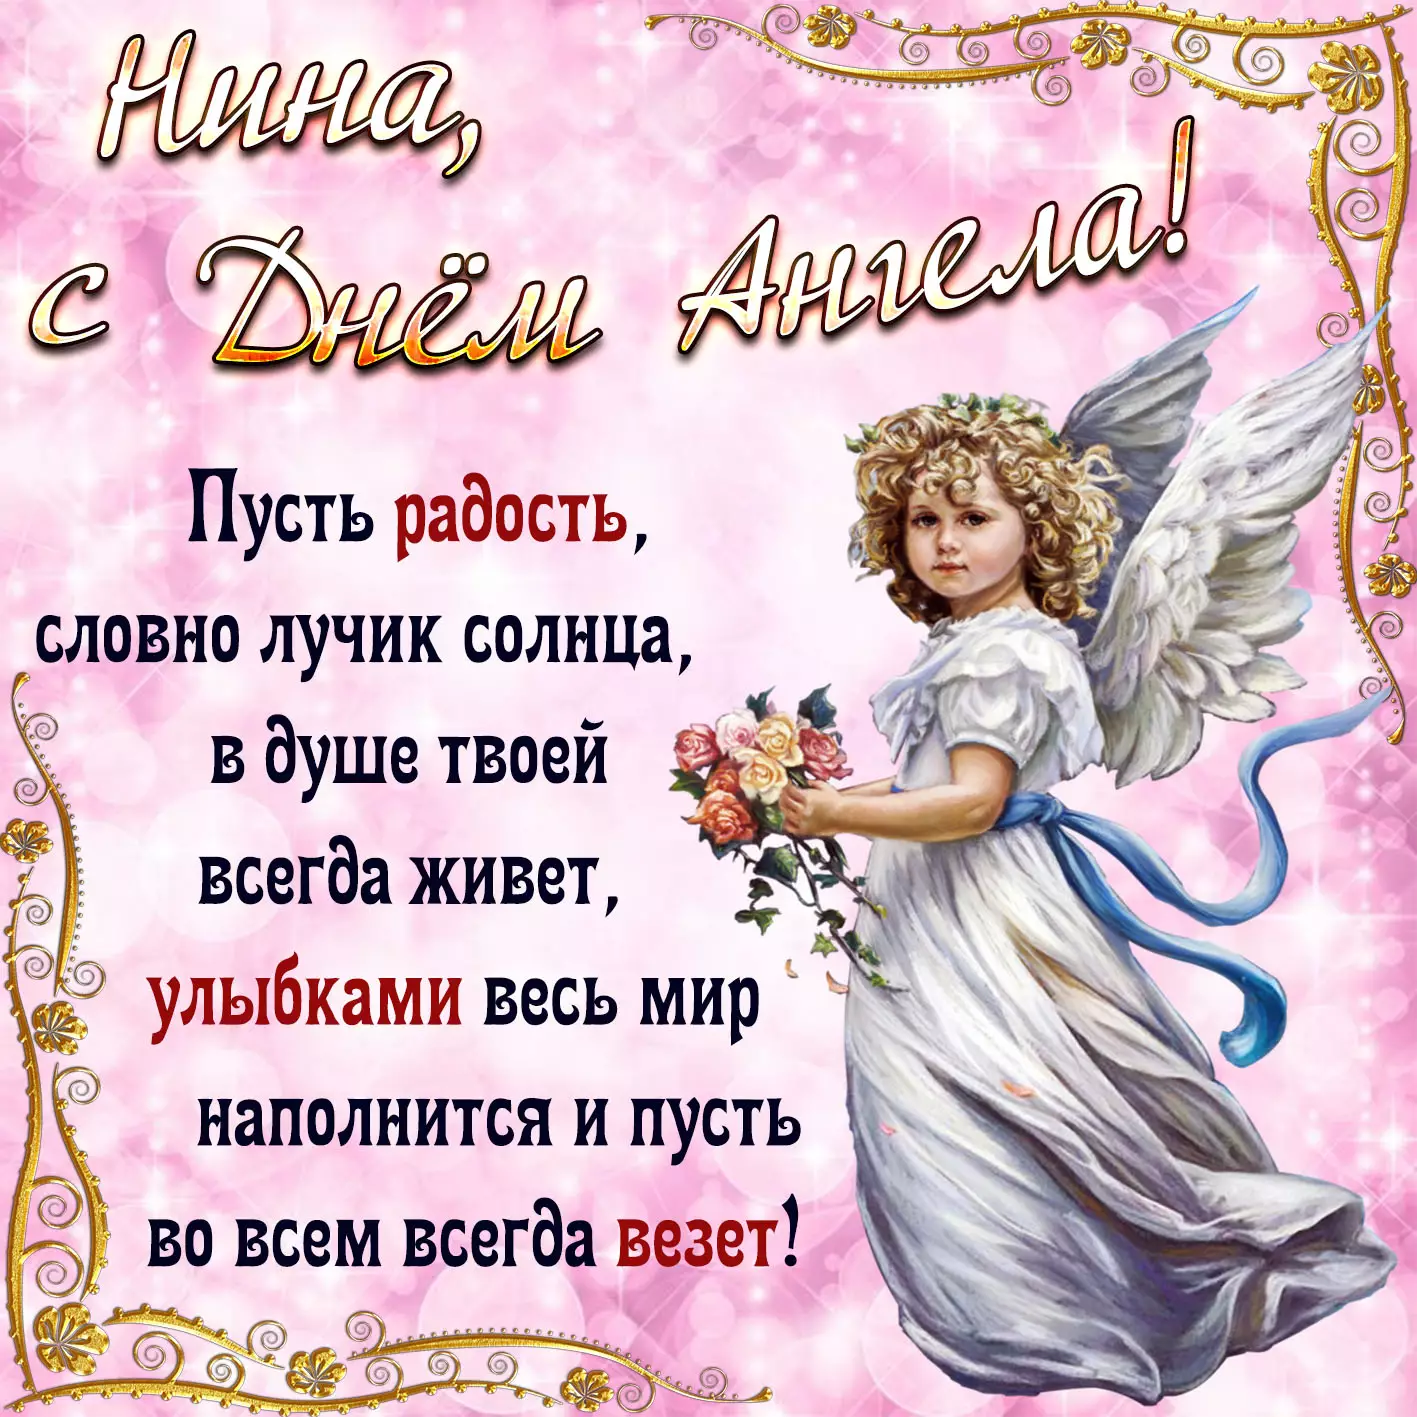 Душевные поздравления в стихах и прозе с Днем ангела Дмитрия 26 октября 2020 года